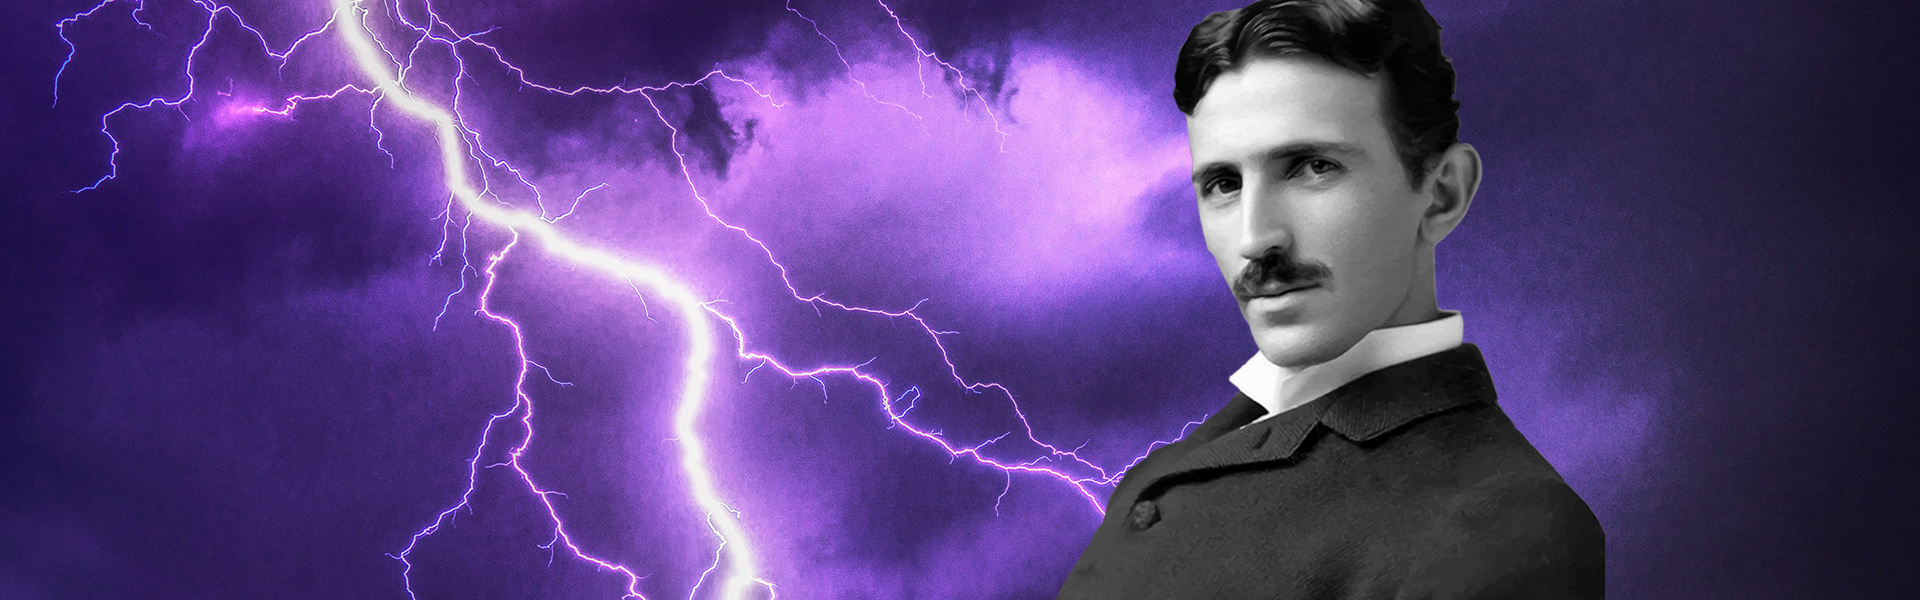 Porträt von Nikola Tesla mit Blitzen